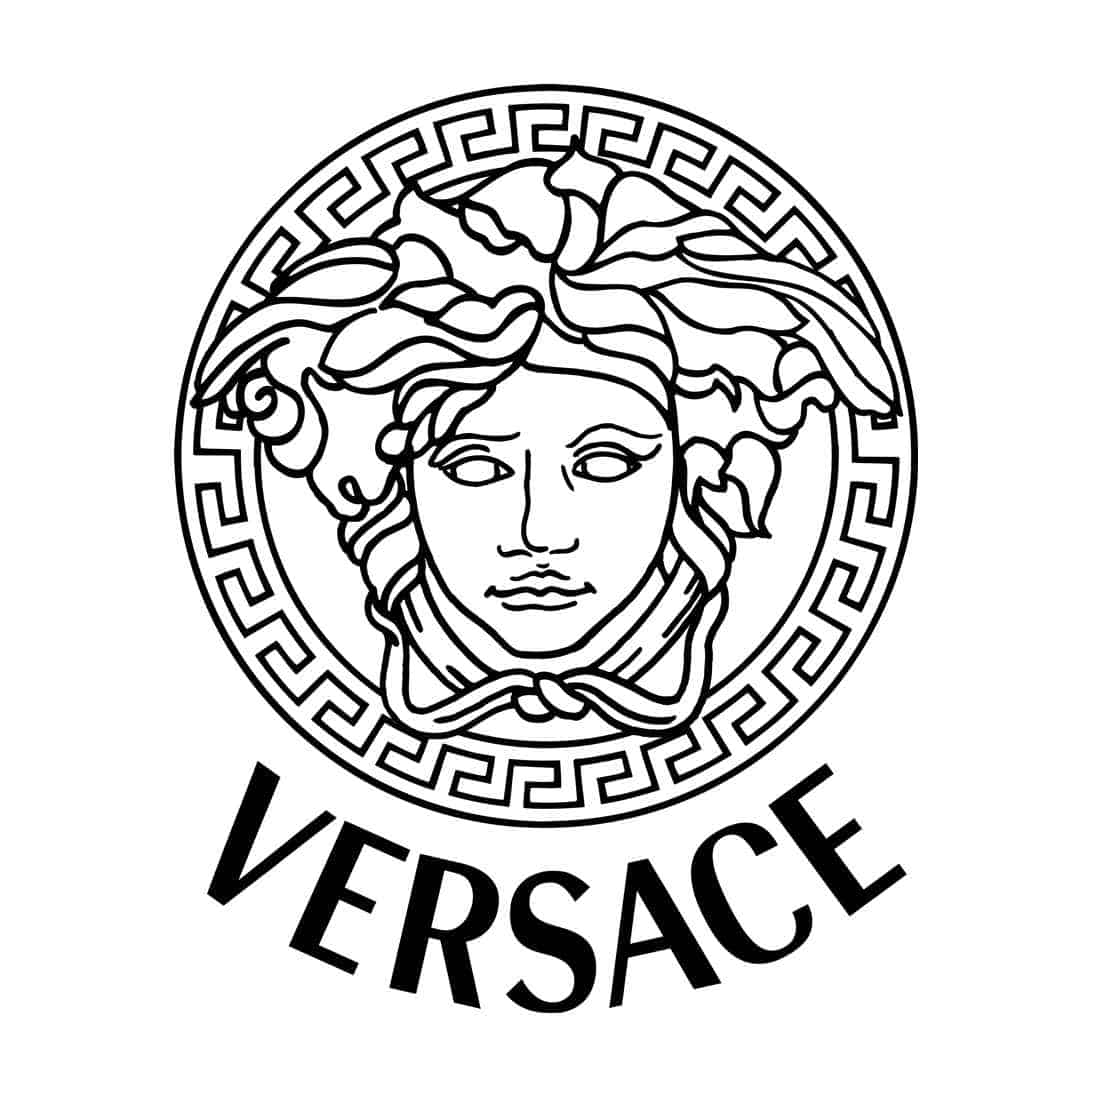 Versace và biểu tượng Medusa nổi tiếng.